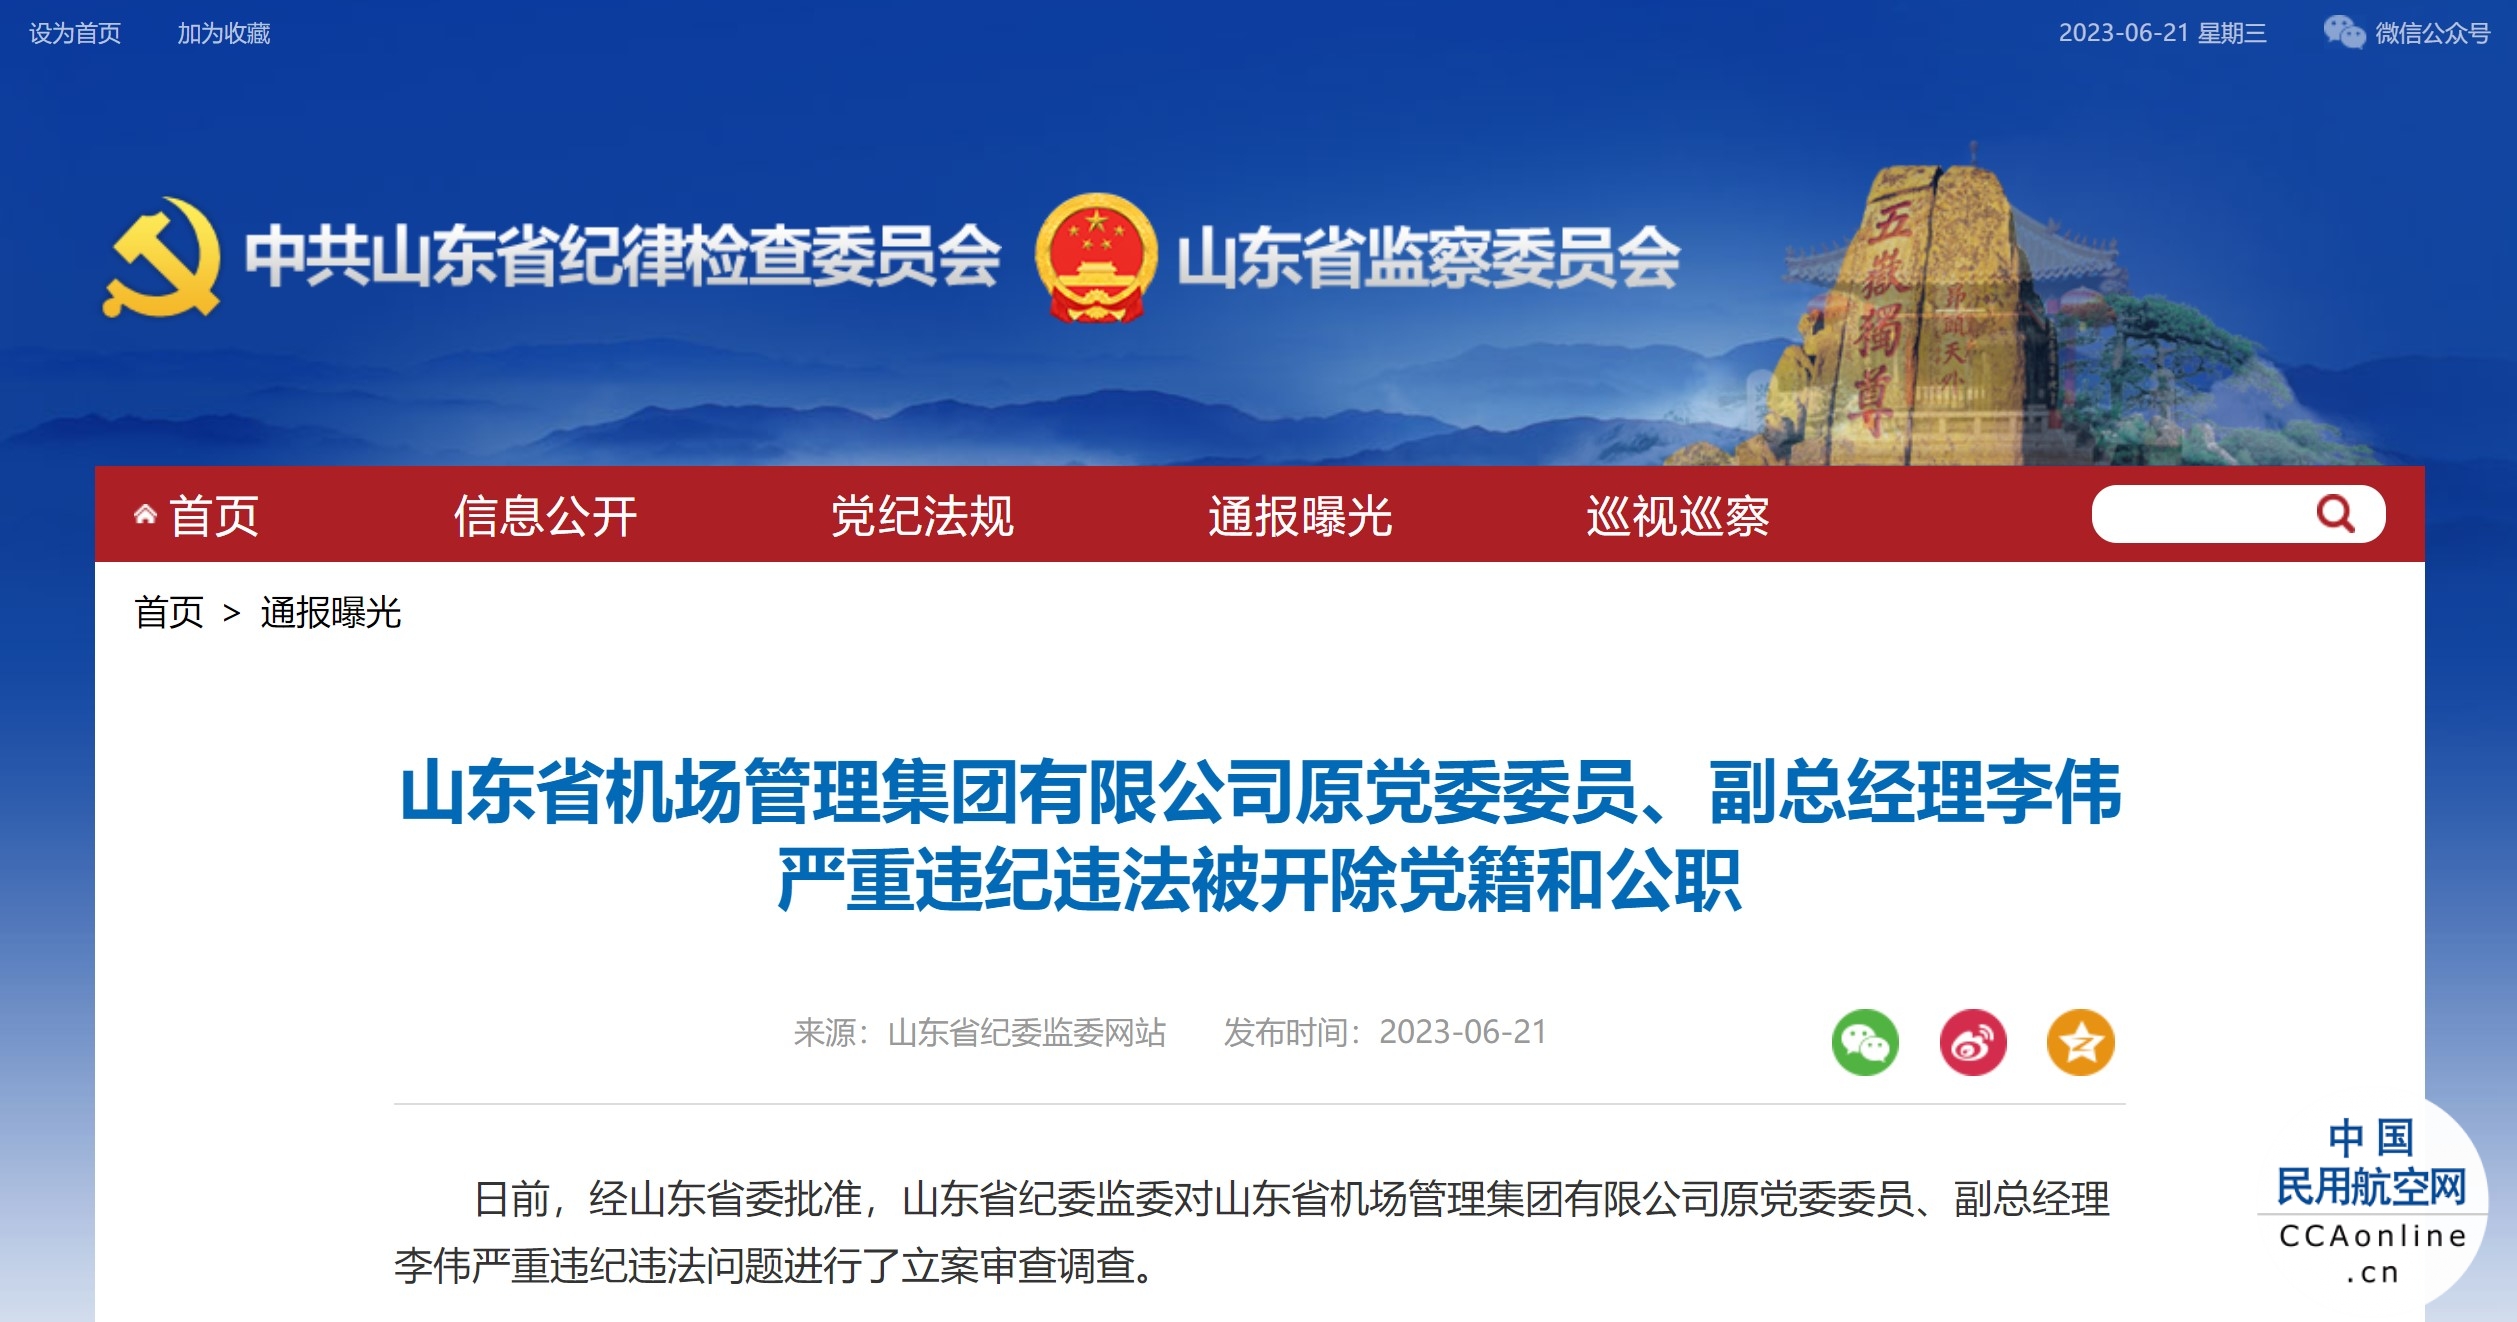 山东省机场管理集团有限公司原党委委员、副总经理李伟被开除党籍和公职